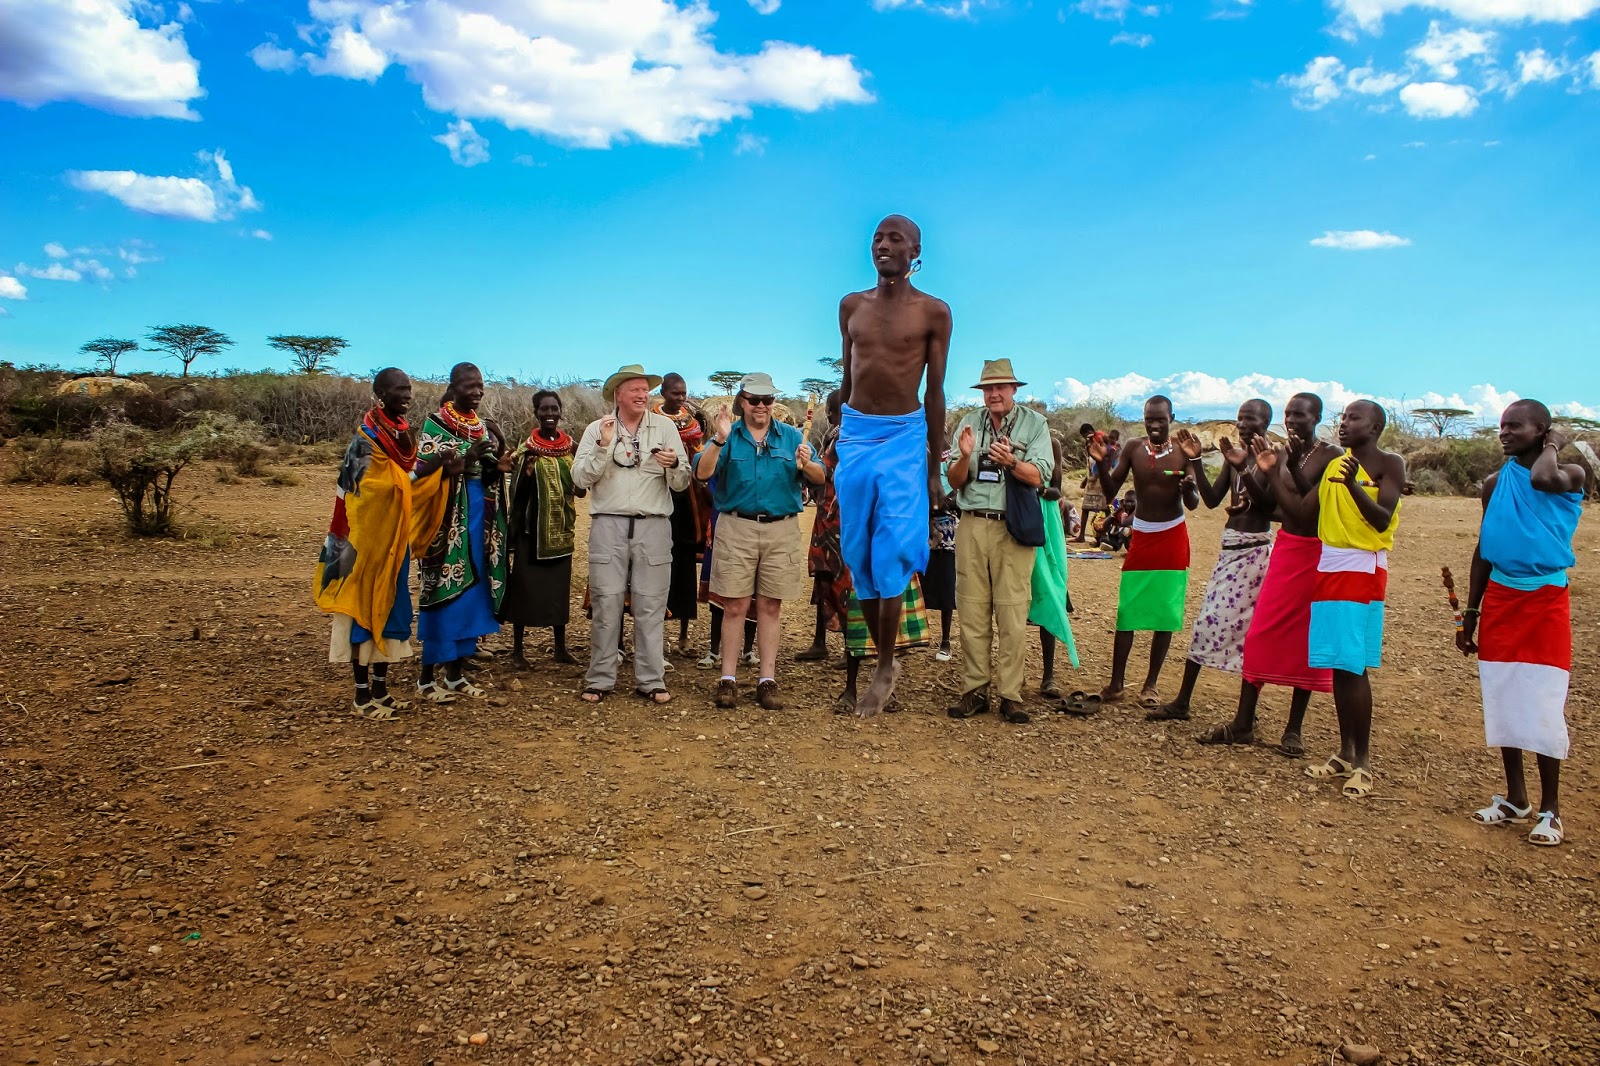 Cannundrums The Samburu Tribe Of Kenya